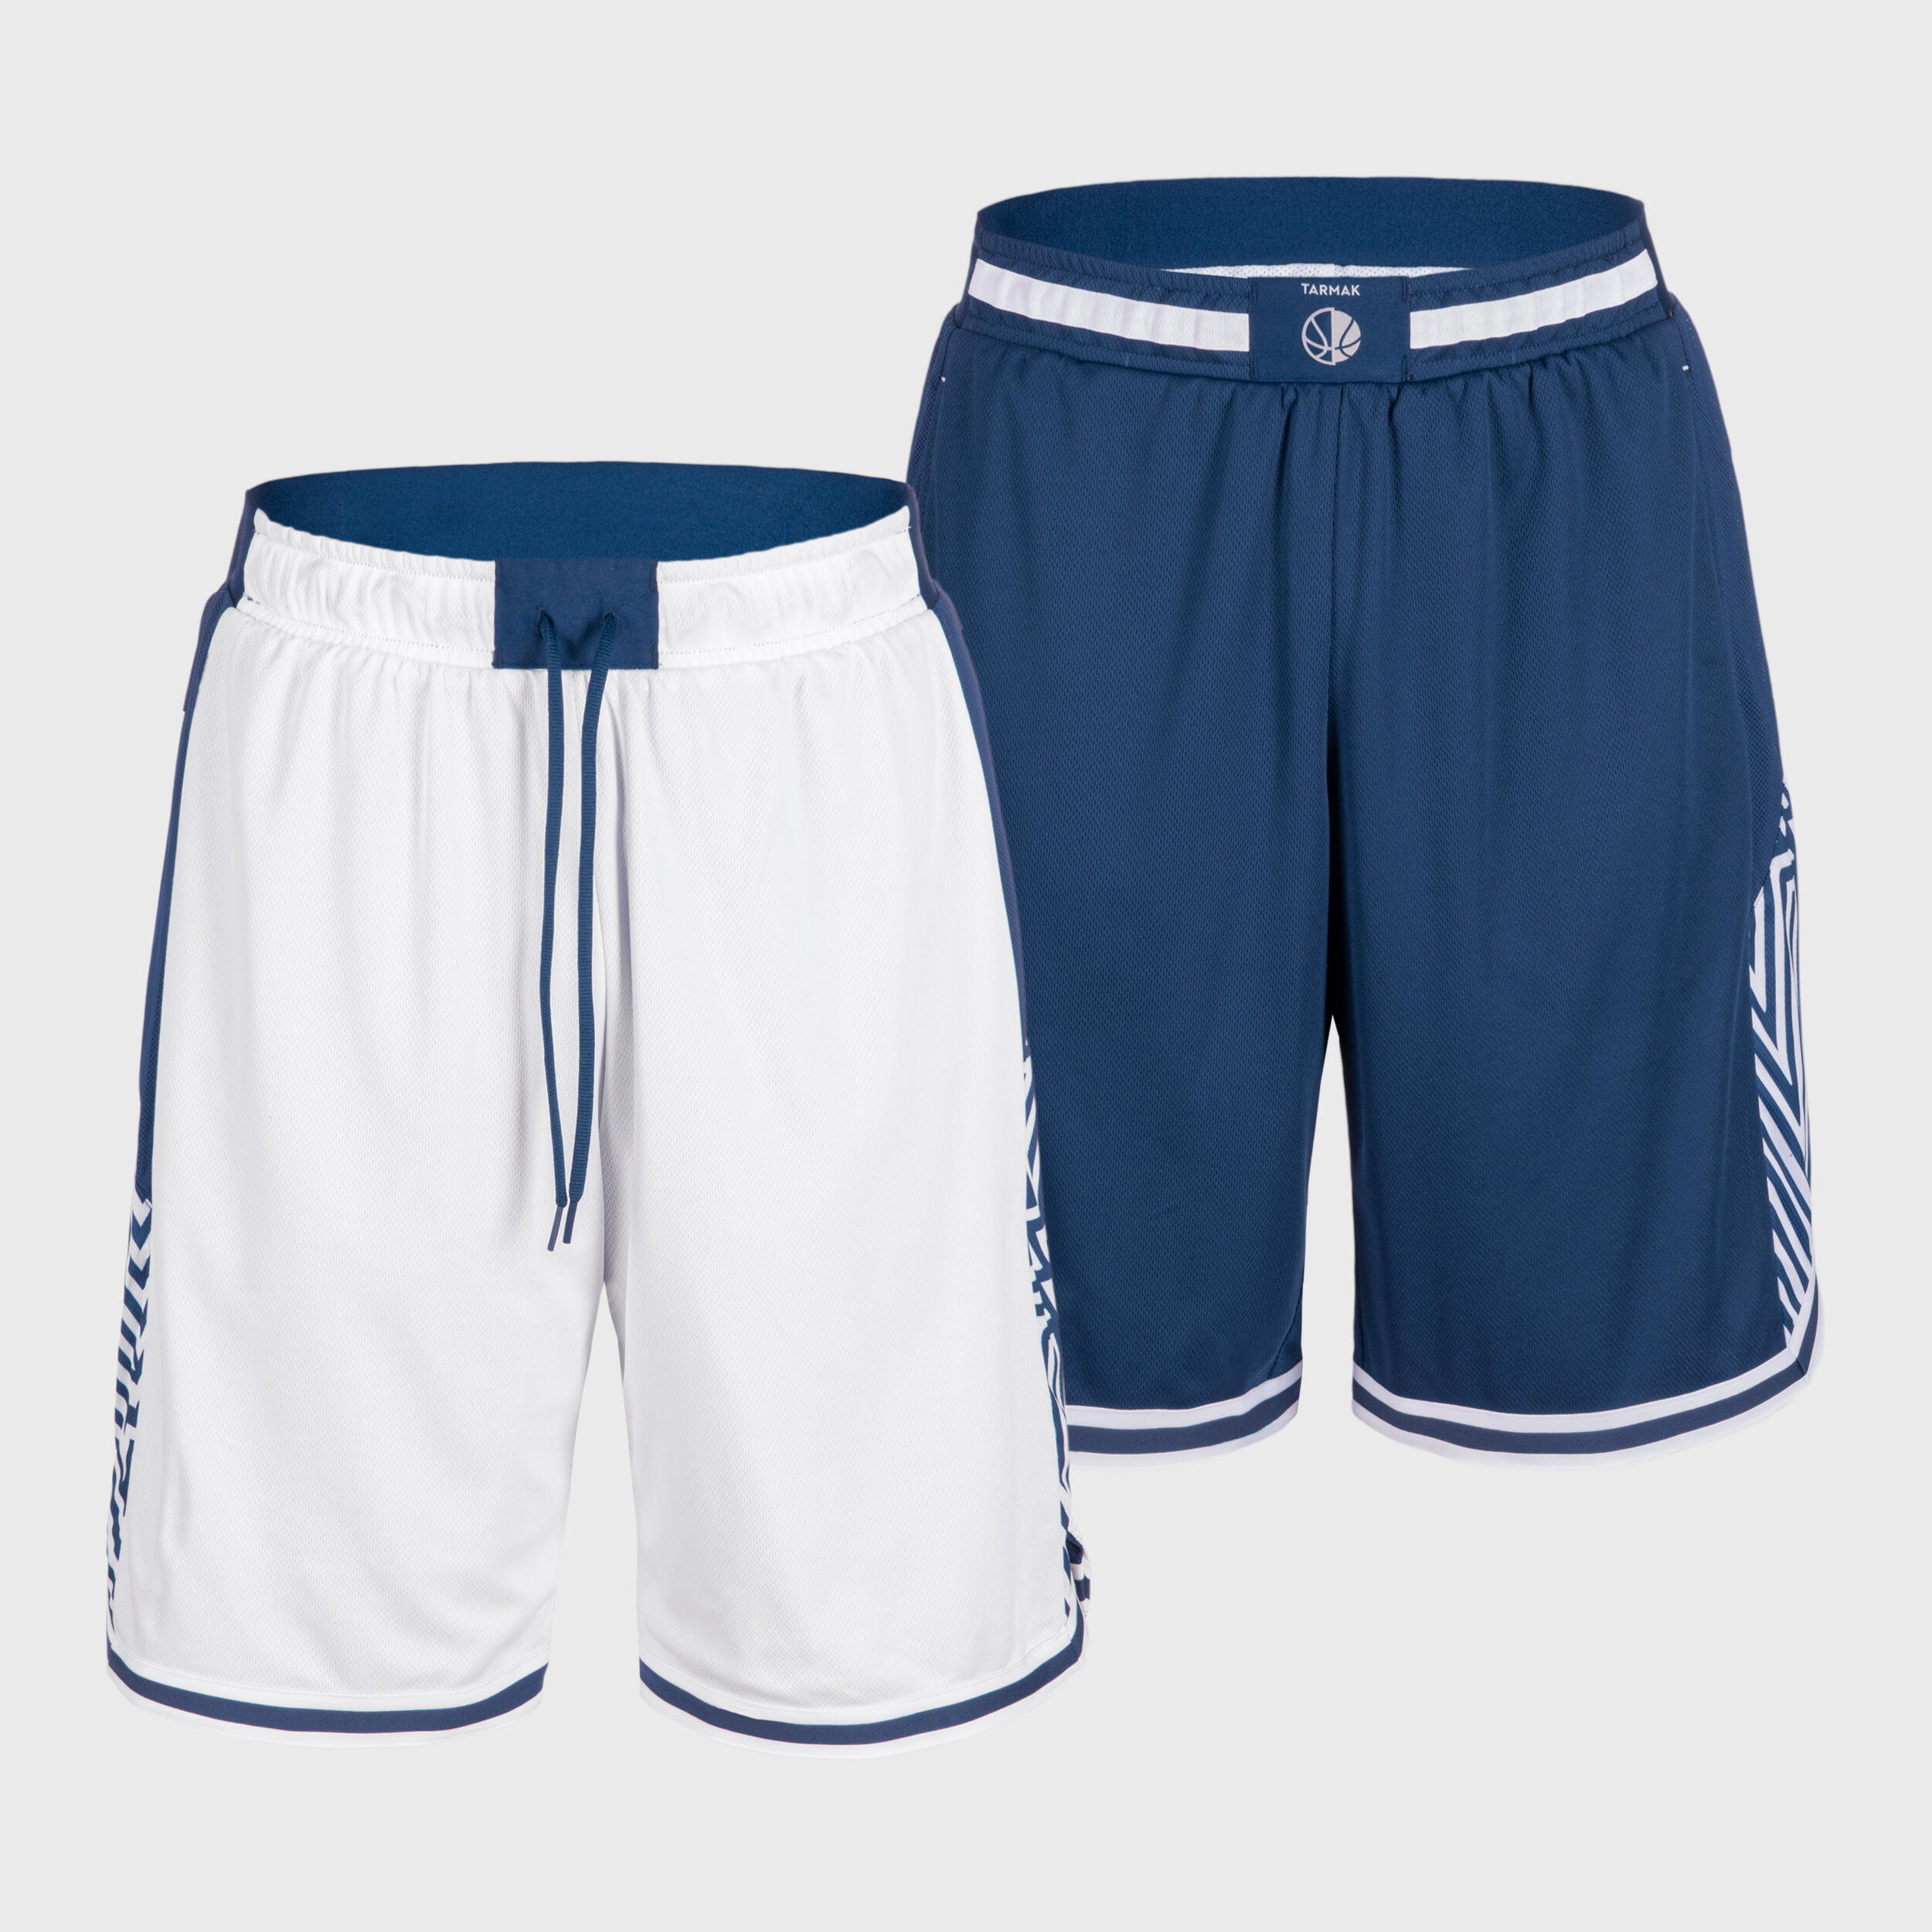 TARMAK Men's/Women's Reversible Basketball Shorts SH500R - White/Navy